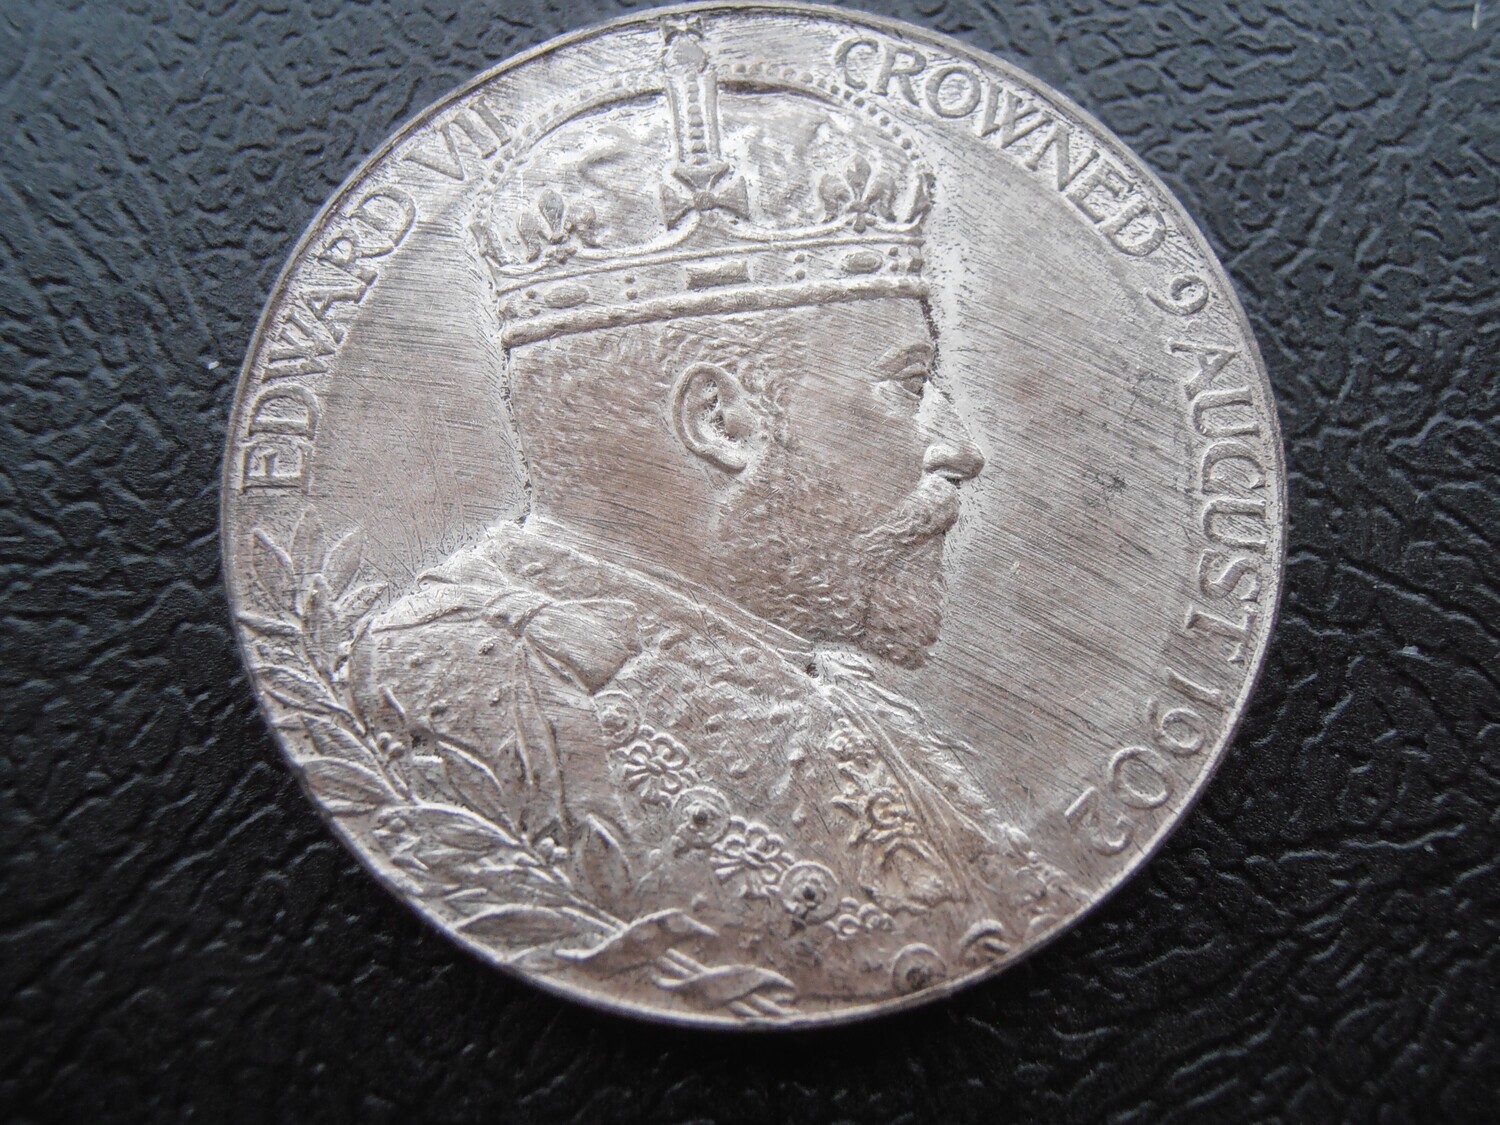 Coronation of King Edward VII - 1902